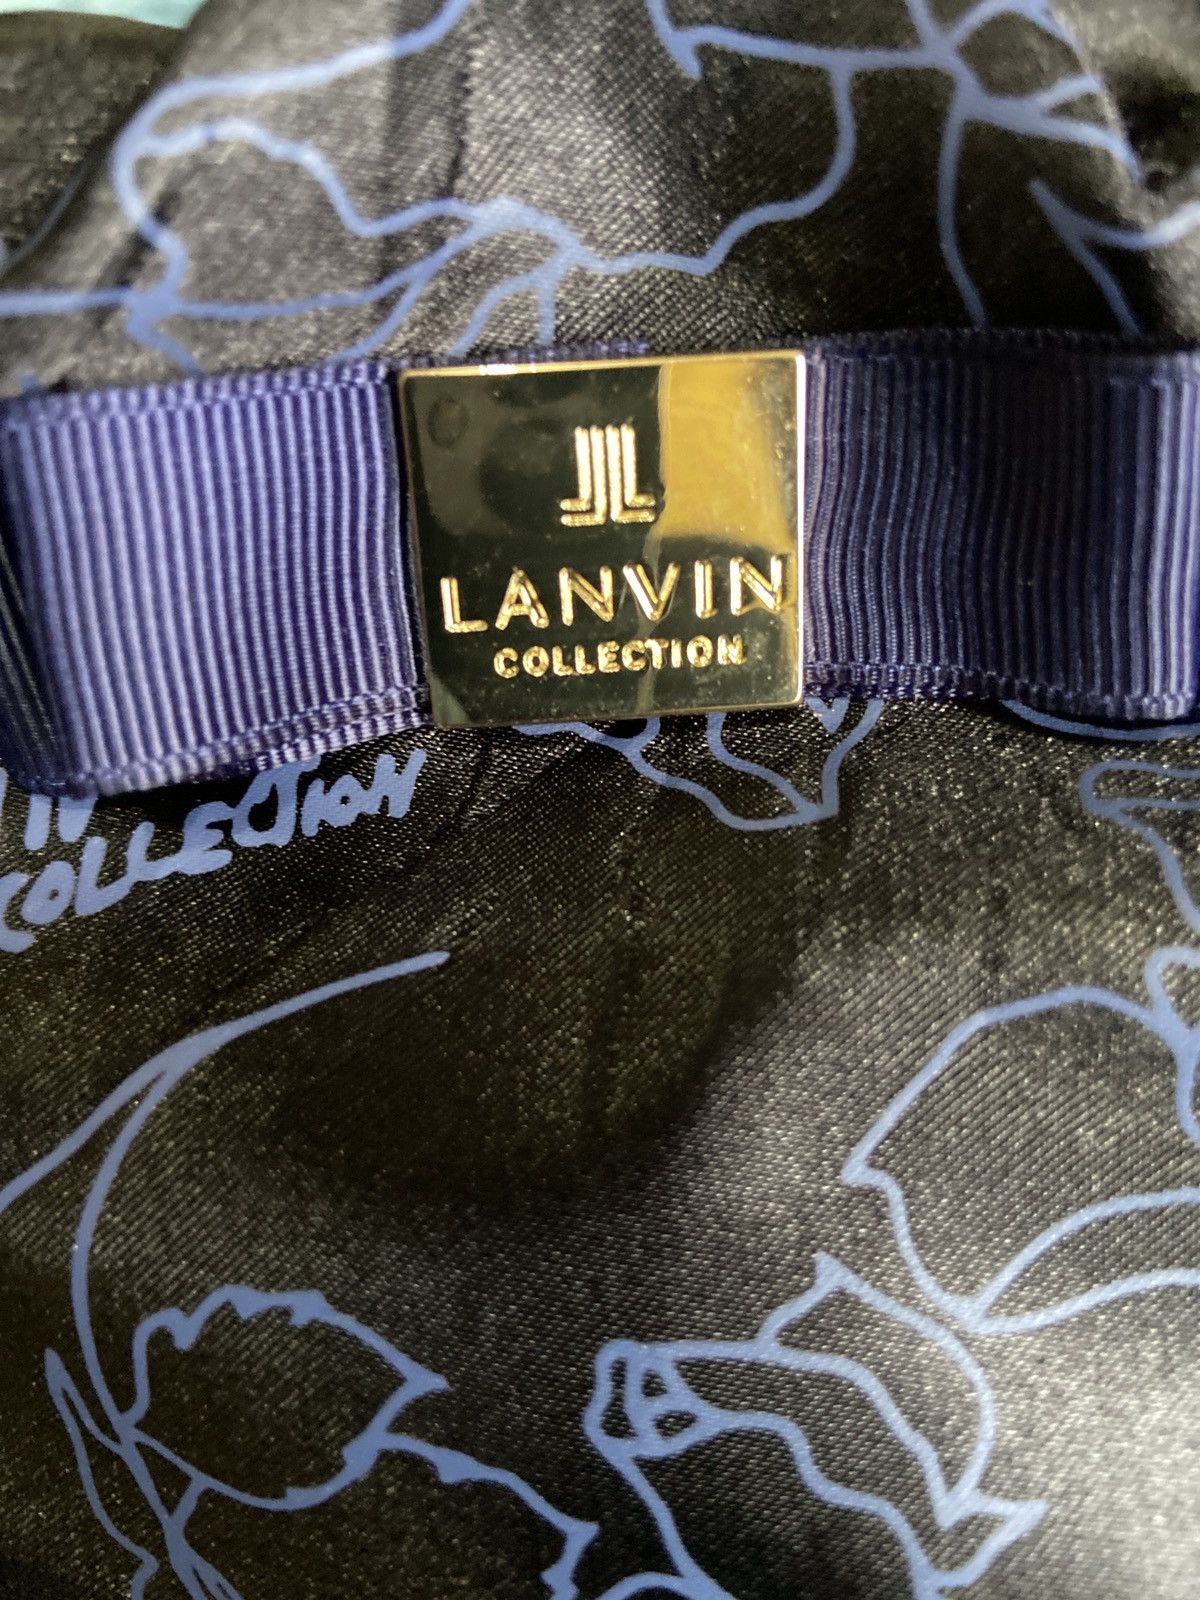 Lanvin Collection Clutch Bag - 5